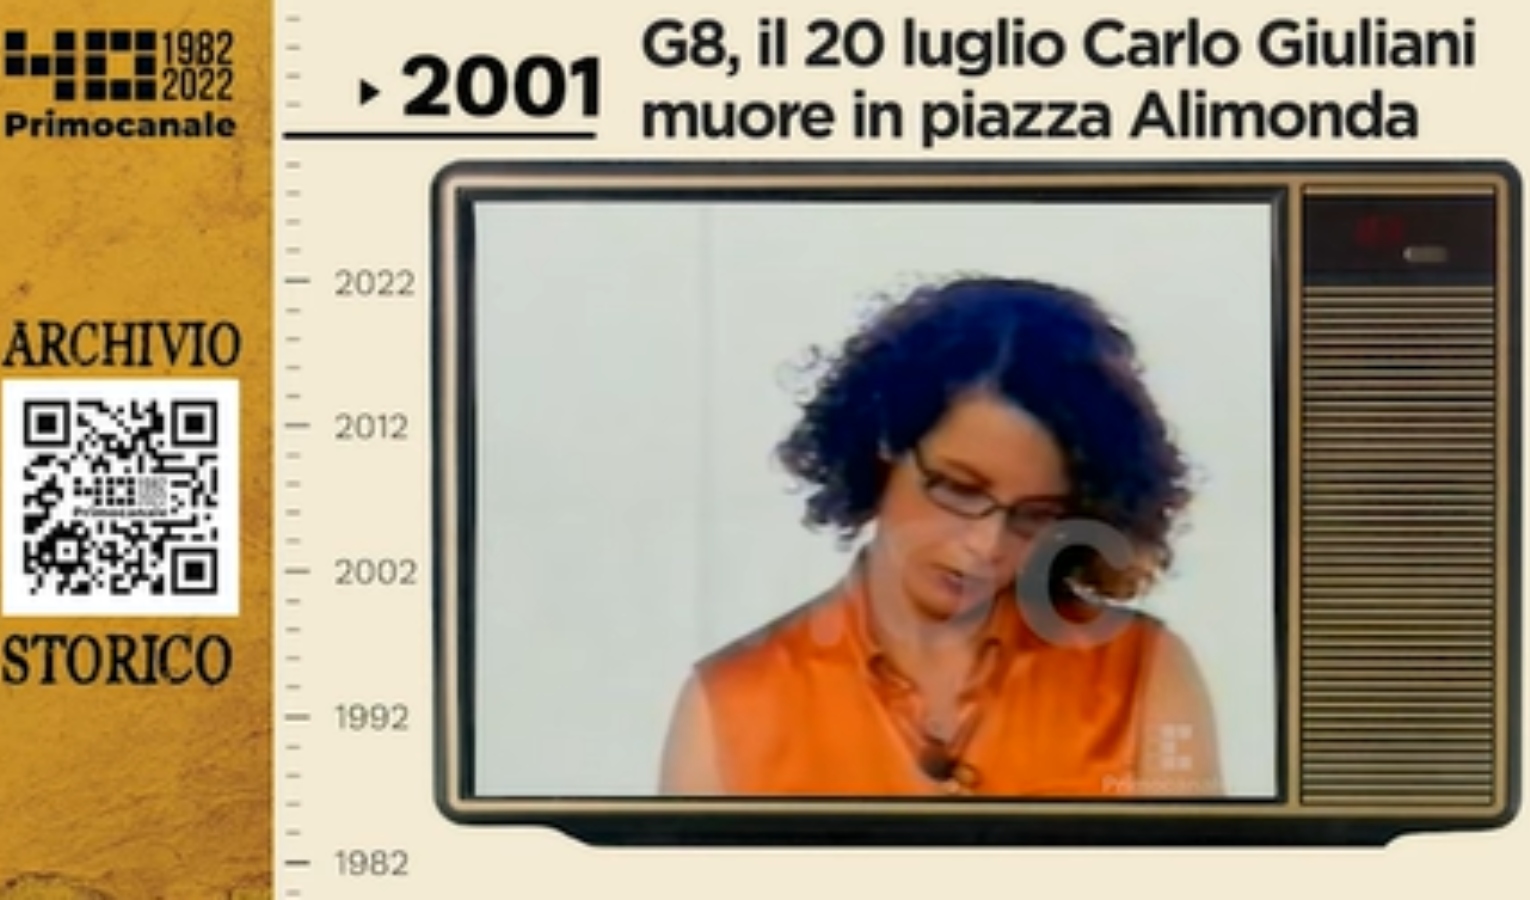 Dall'archivio storico di Primocanale, 2001: Carlo Giuliano muore in piazza Alimonda